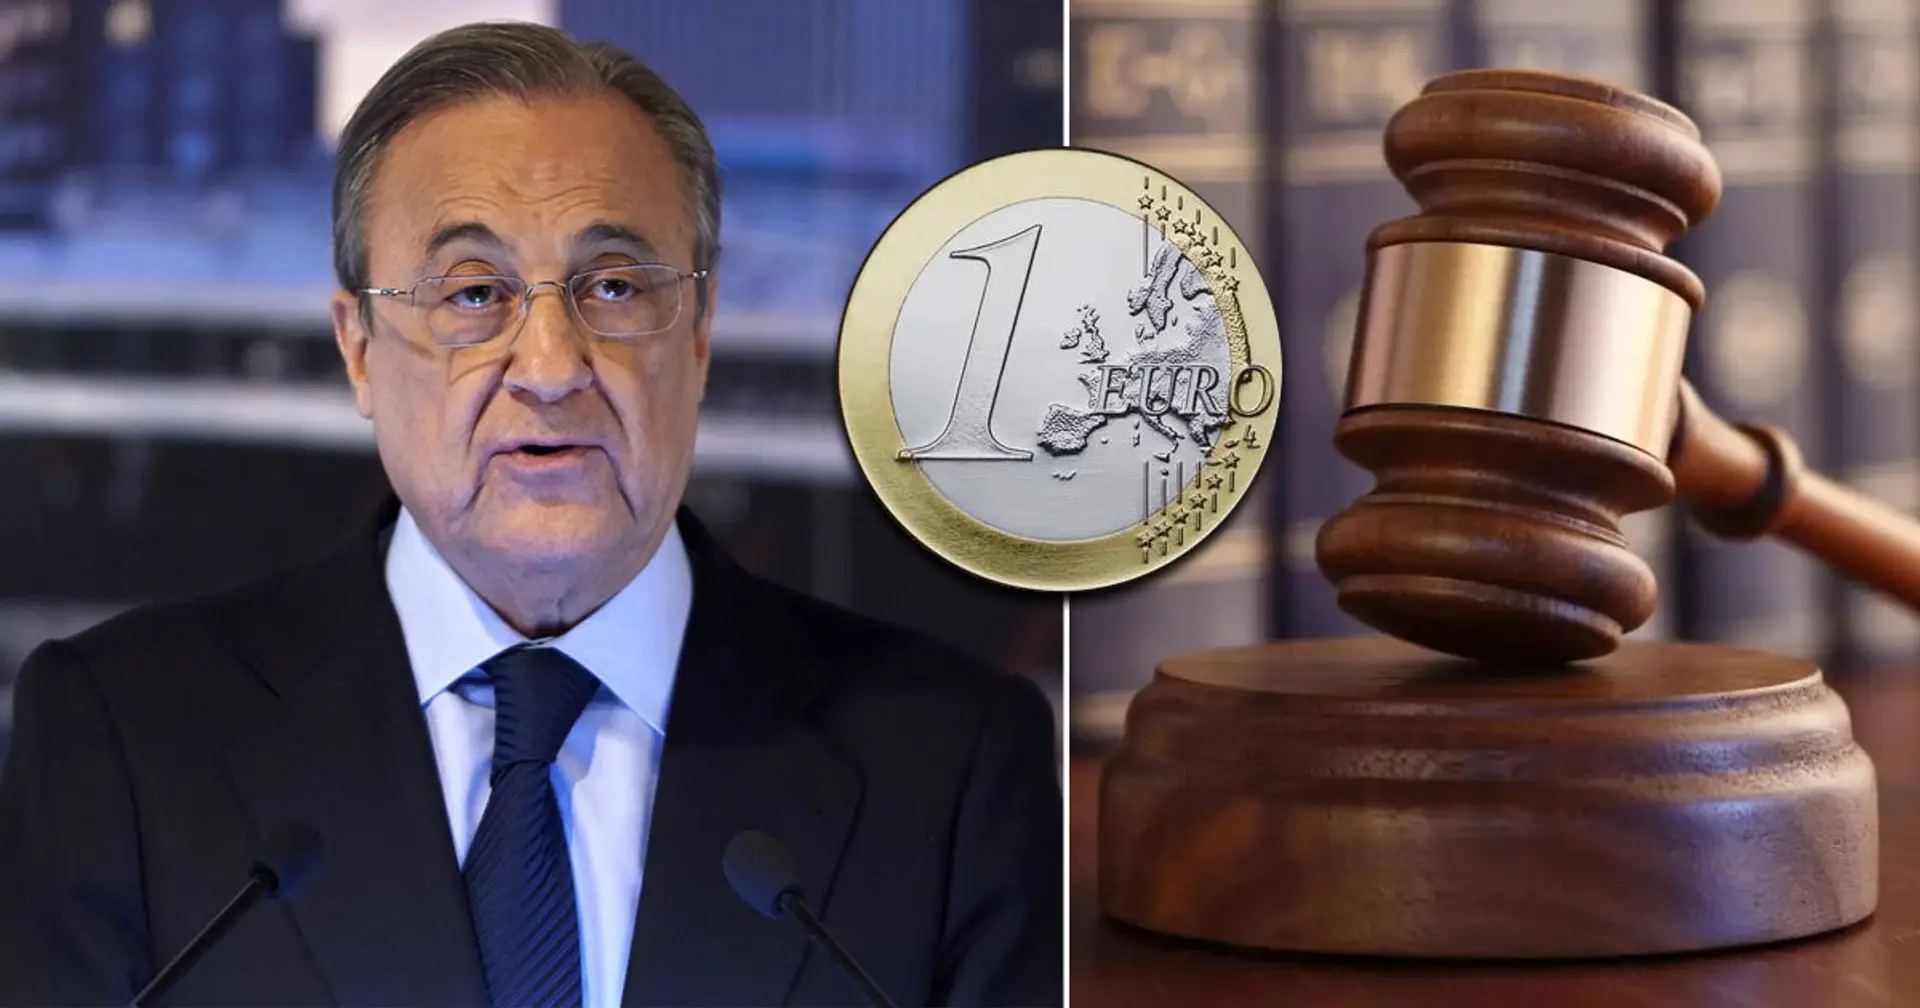 Gericht verurteilt Zeitung zur Zahlung von einem Euro an Florentino Perez – hier ist der Grund